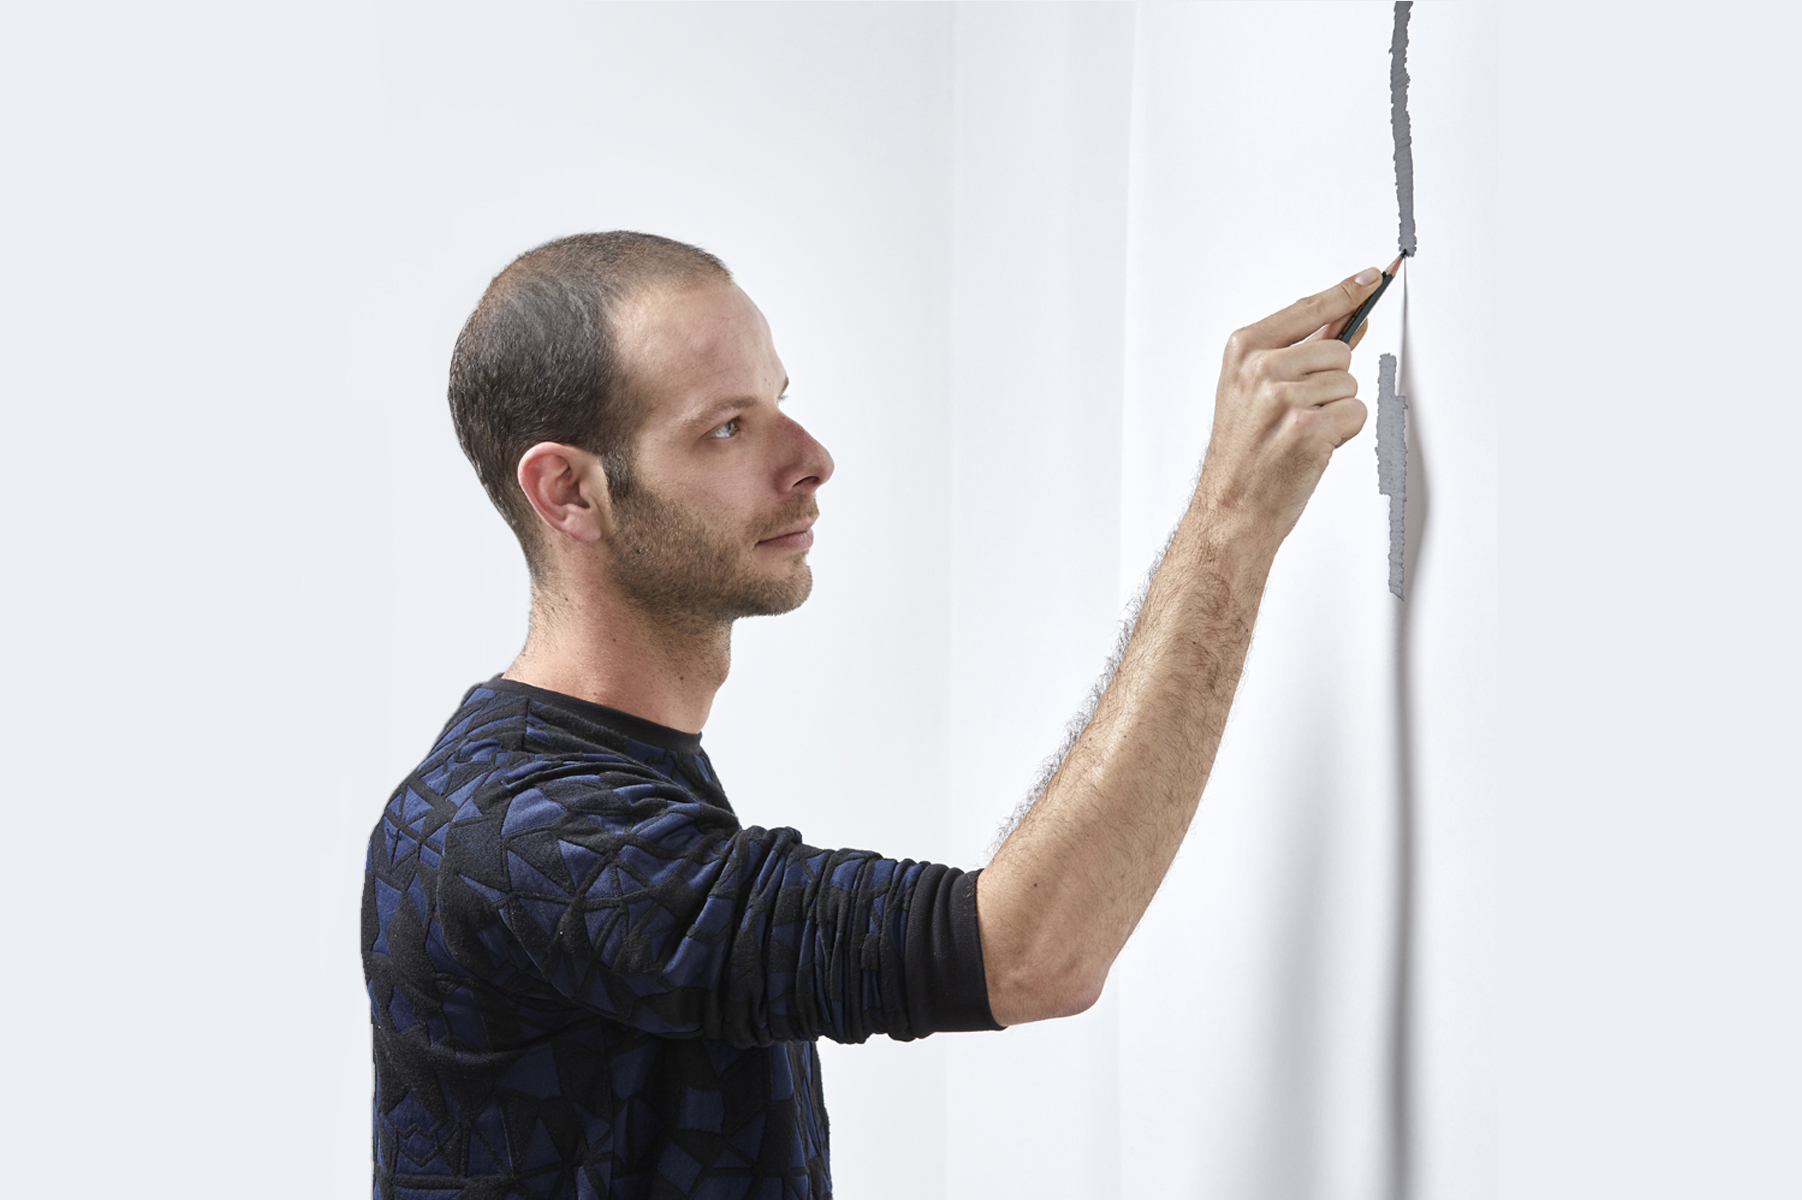 גבר מצייר על קיר, צילום סיגל קלטון 